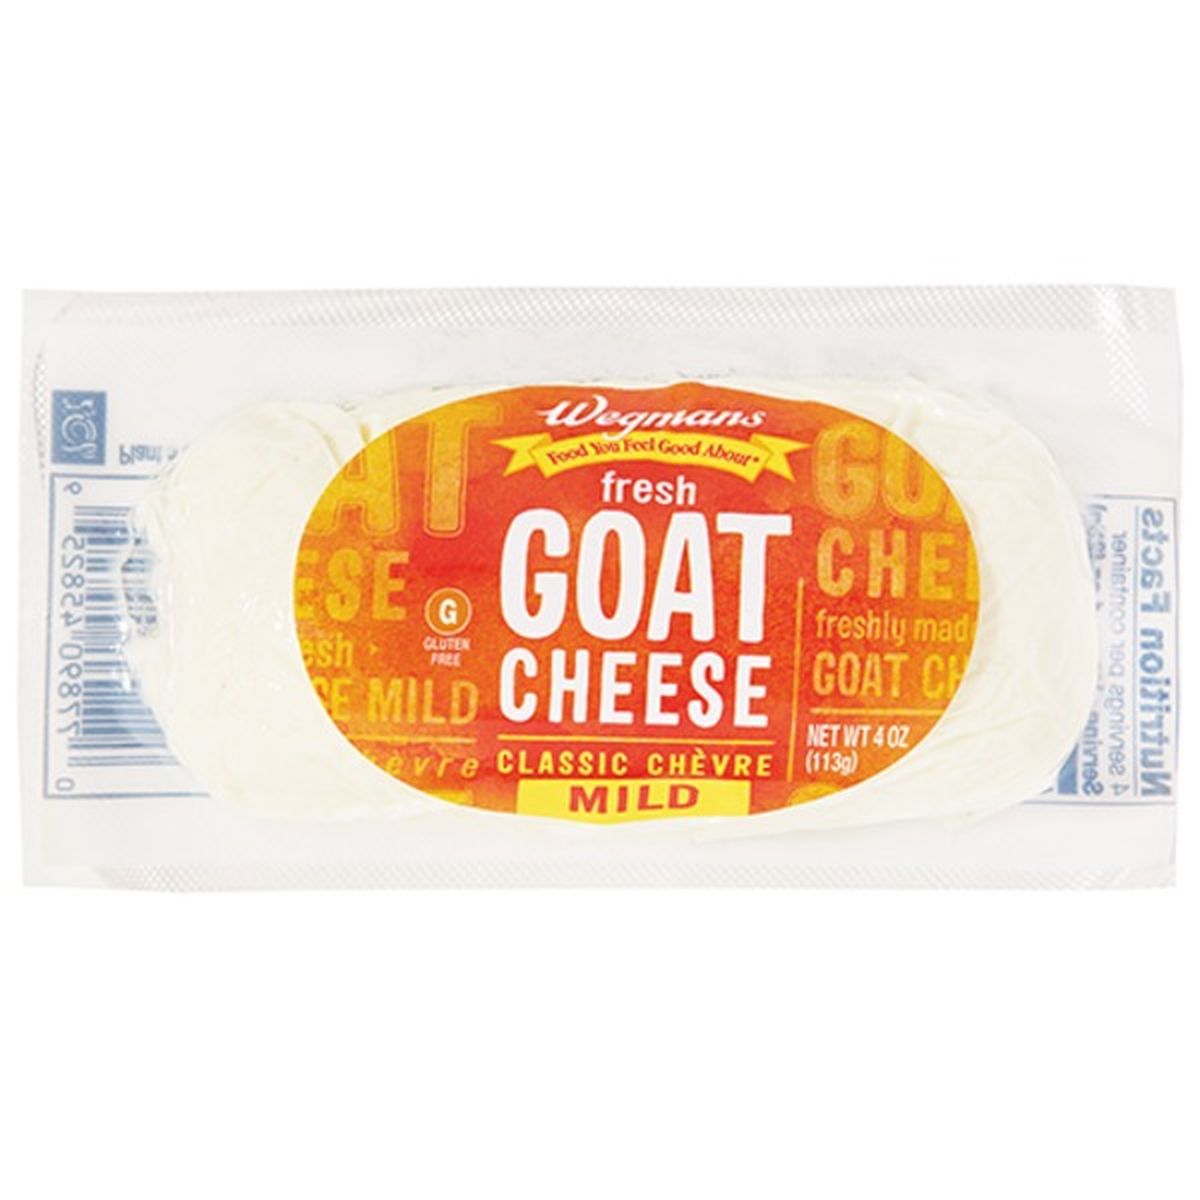 Calories in Wegmans Fresh Goat Cheese Mild